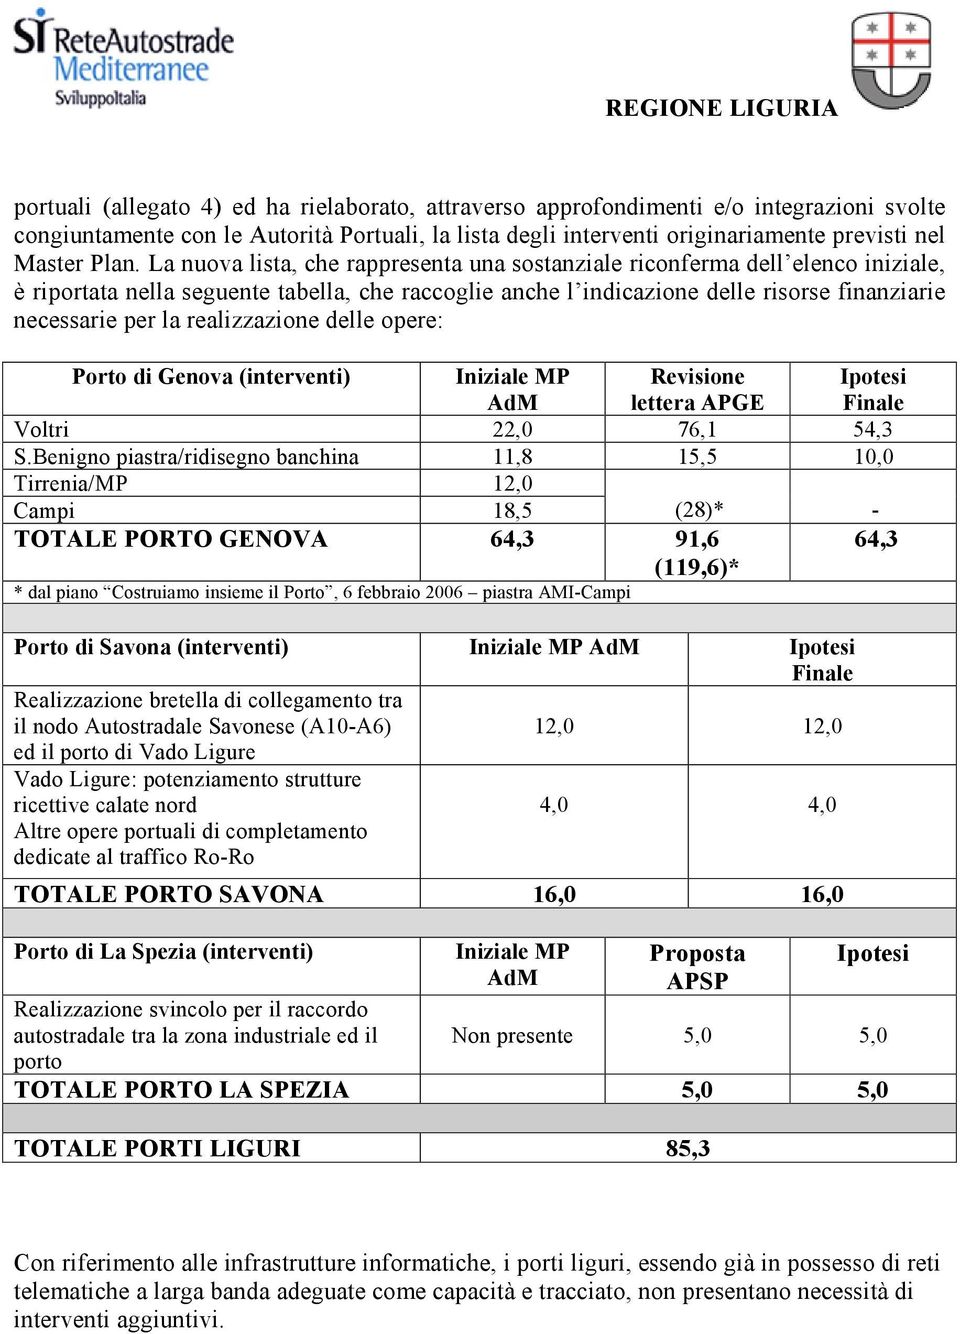 realizzazione delle opere: Porto di Genova (interventi) Iniziale MP AdM Revisione lettera APGE Ipotesi Finale Voltri 22,0 76,1 54,3 S.